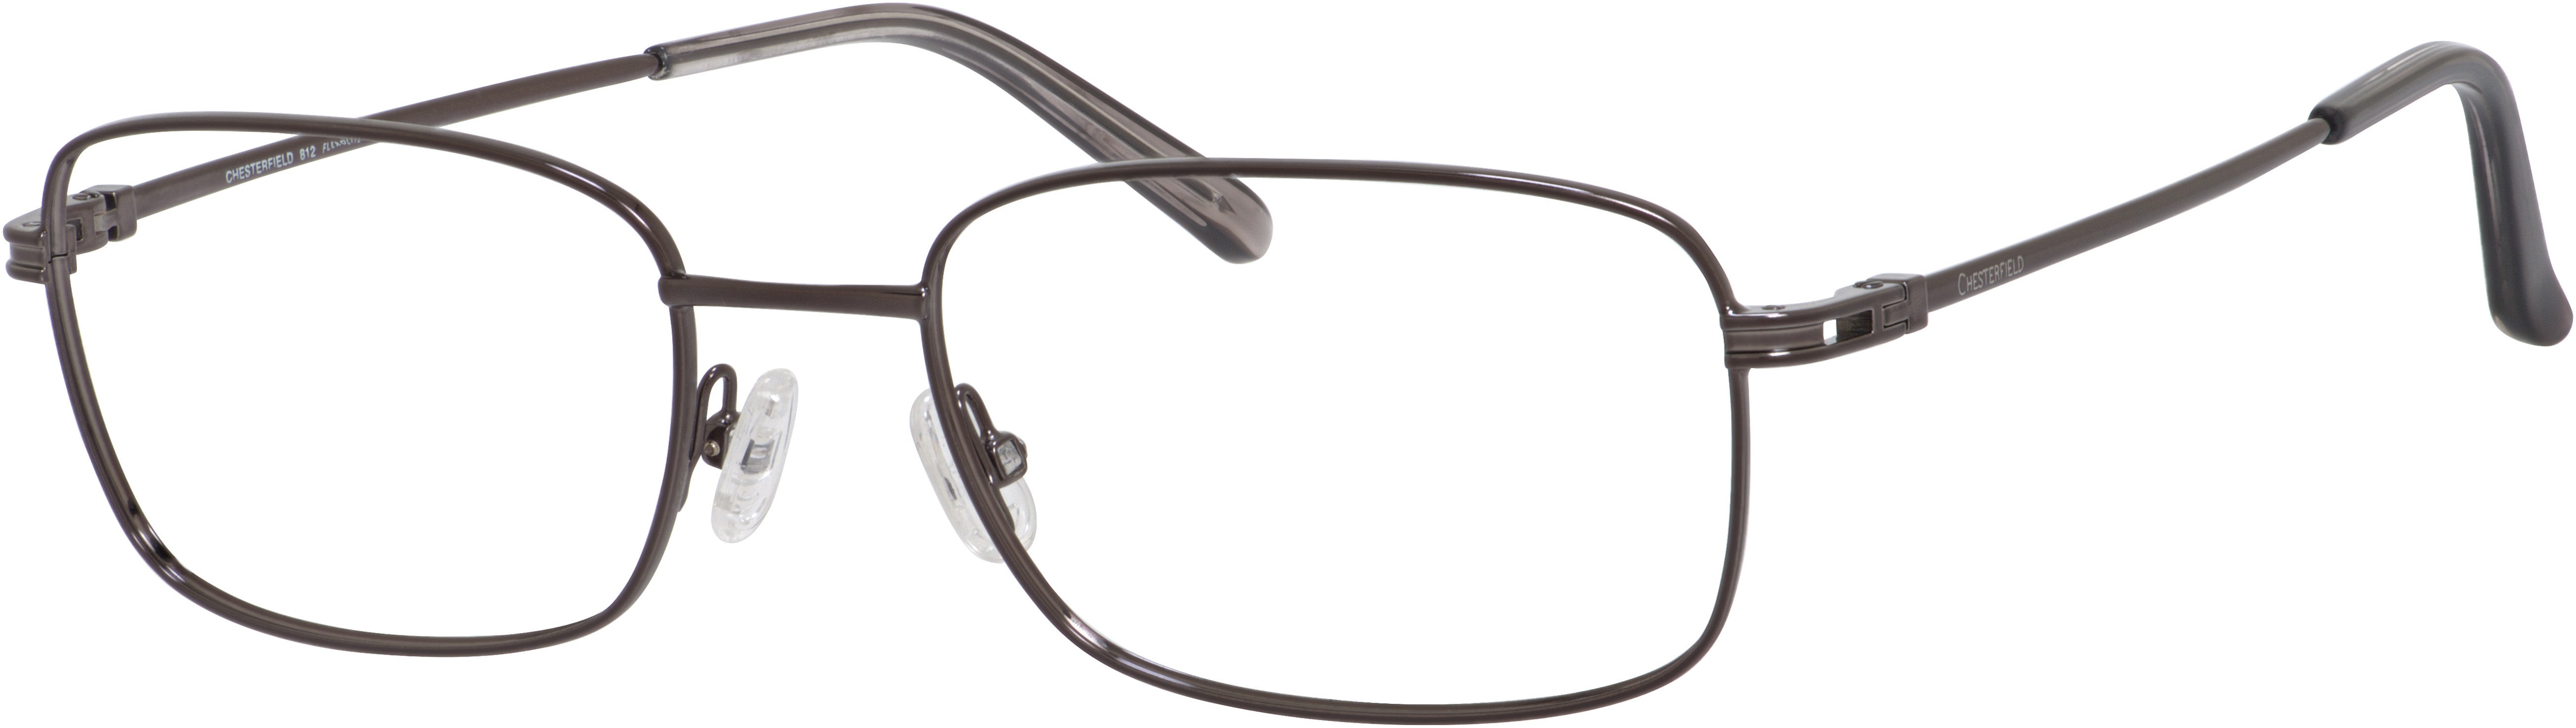  Chesterfield 812 Rectangular Eyeglasses 0TZ2-0TZ2  Gunmetal (00 Demo Lens)